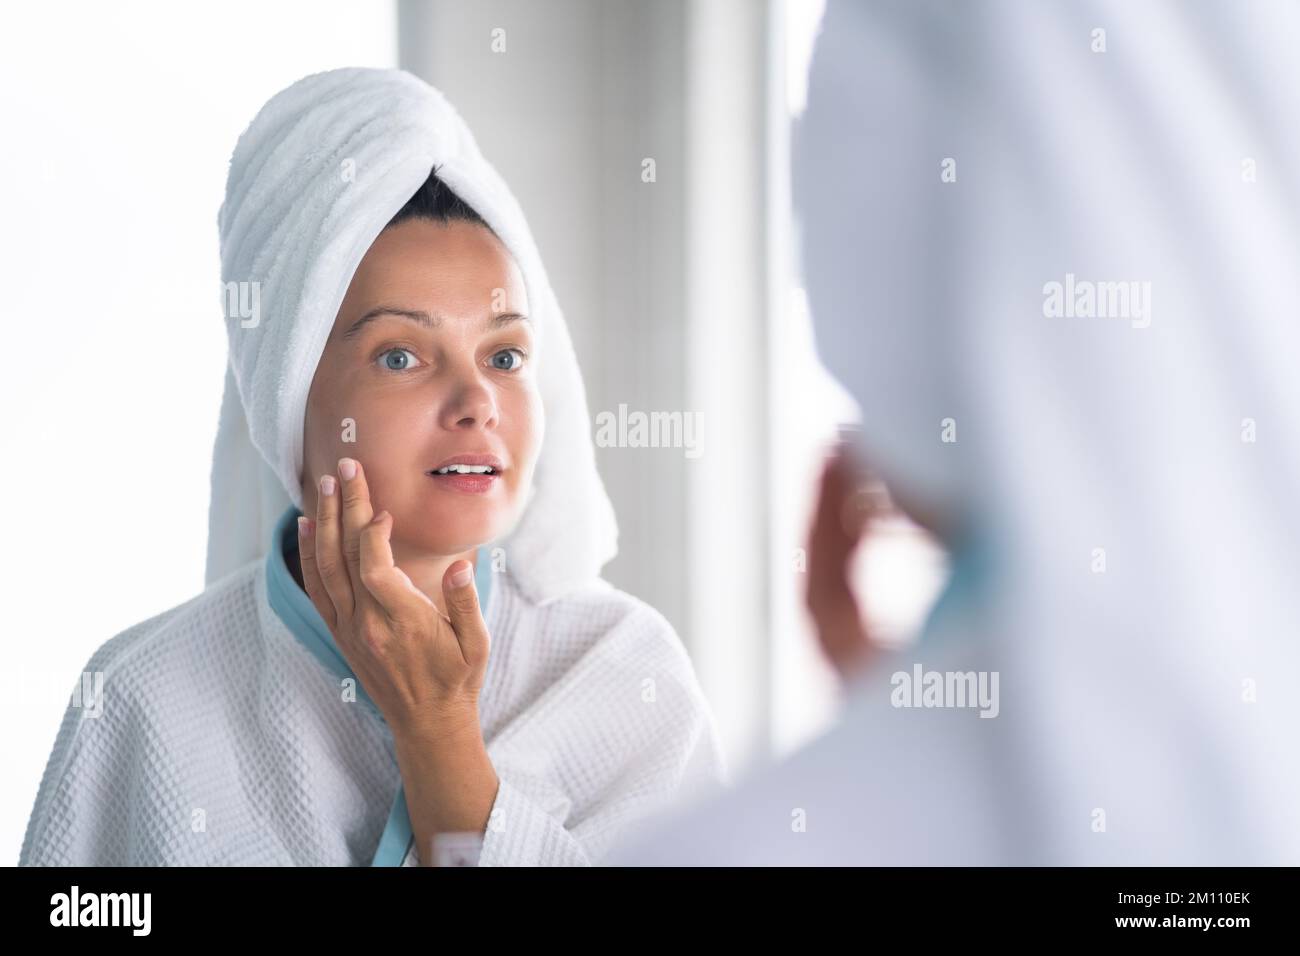 Femme appuyant le bouton sur son visage. Problème de peau d'acné Banque D'Images